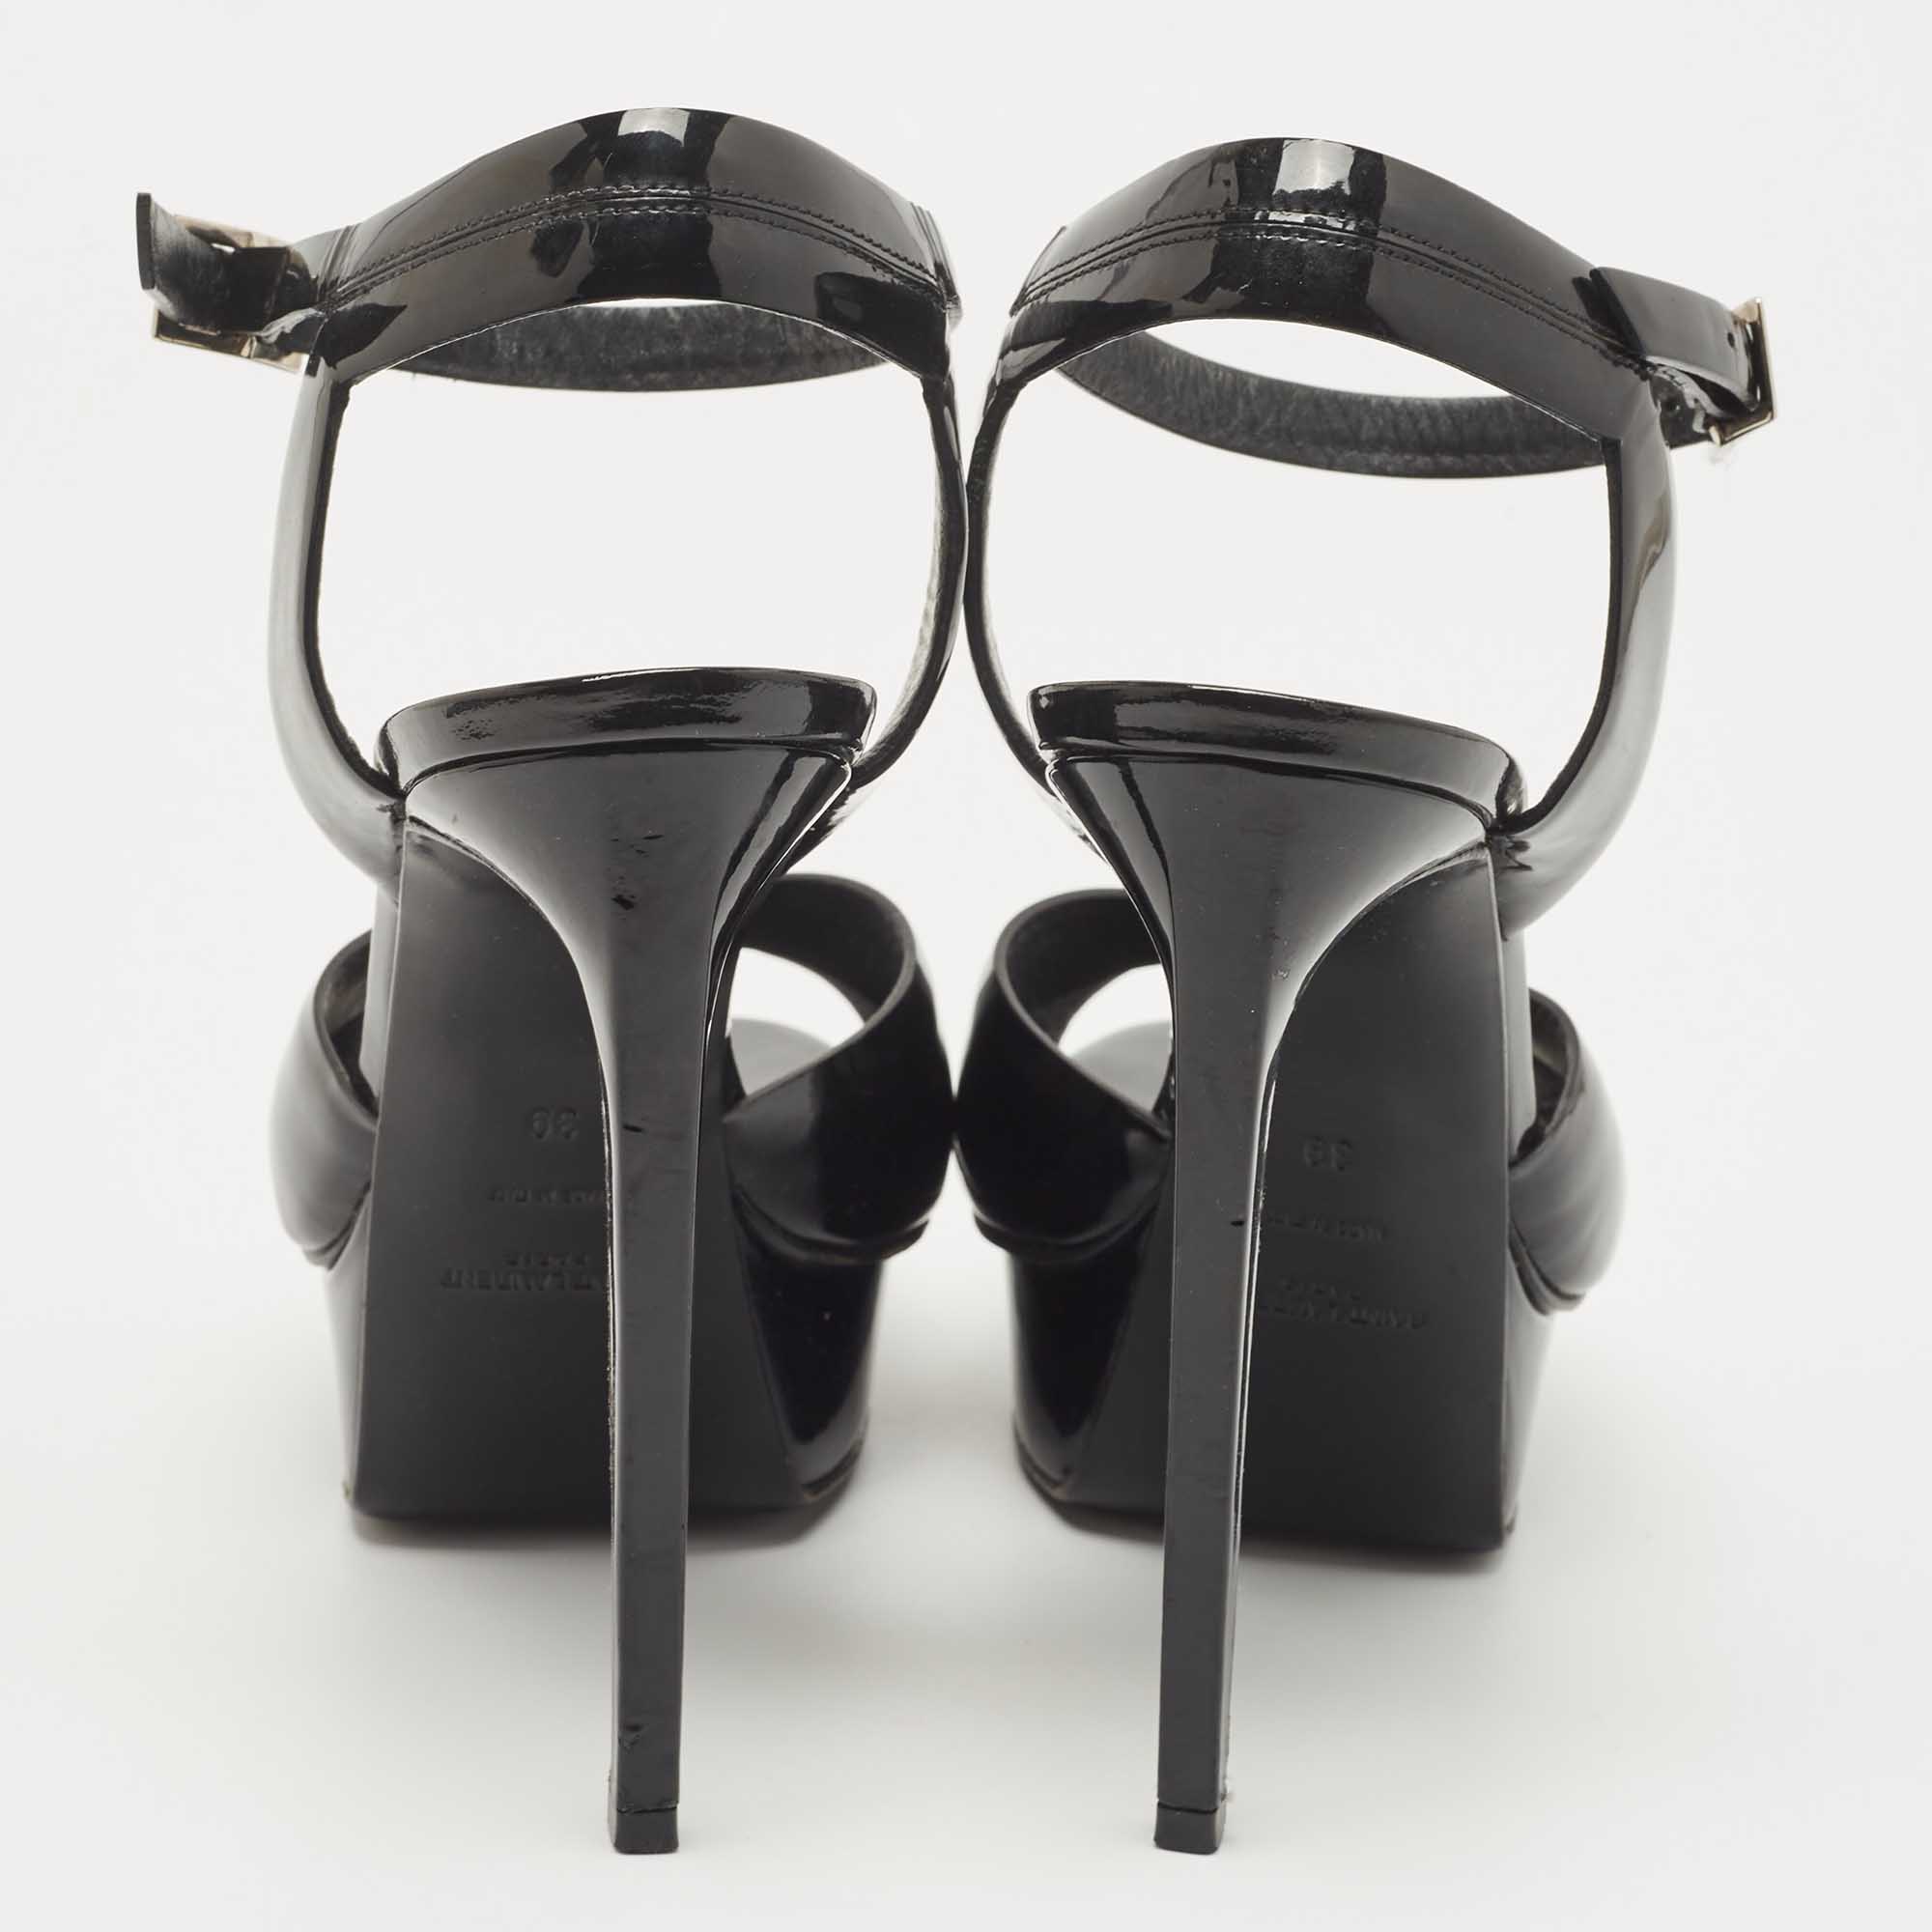 Saint Laurent Black Patent Leather Ankle Strap Sandals Size 39